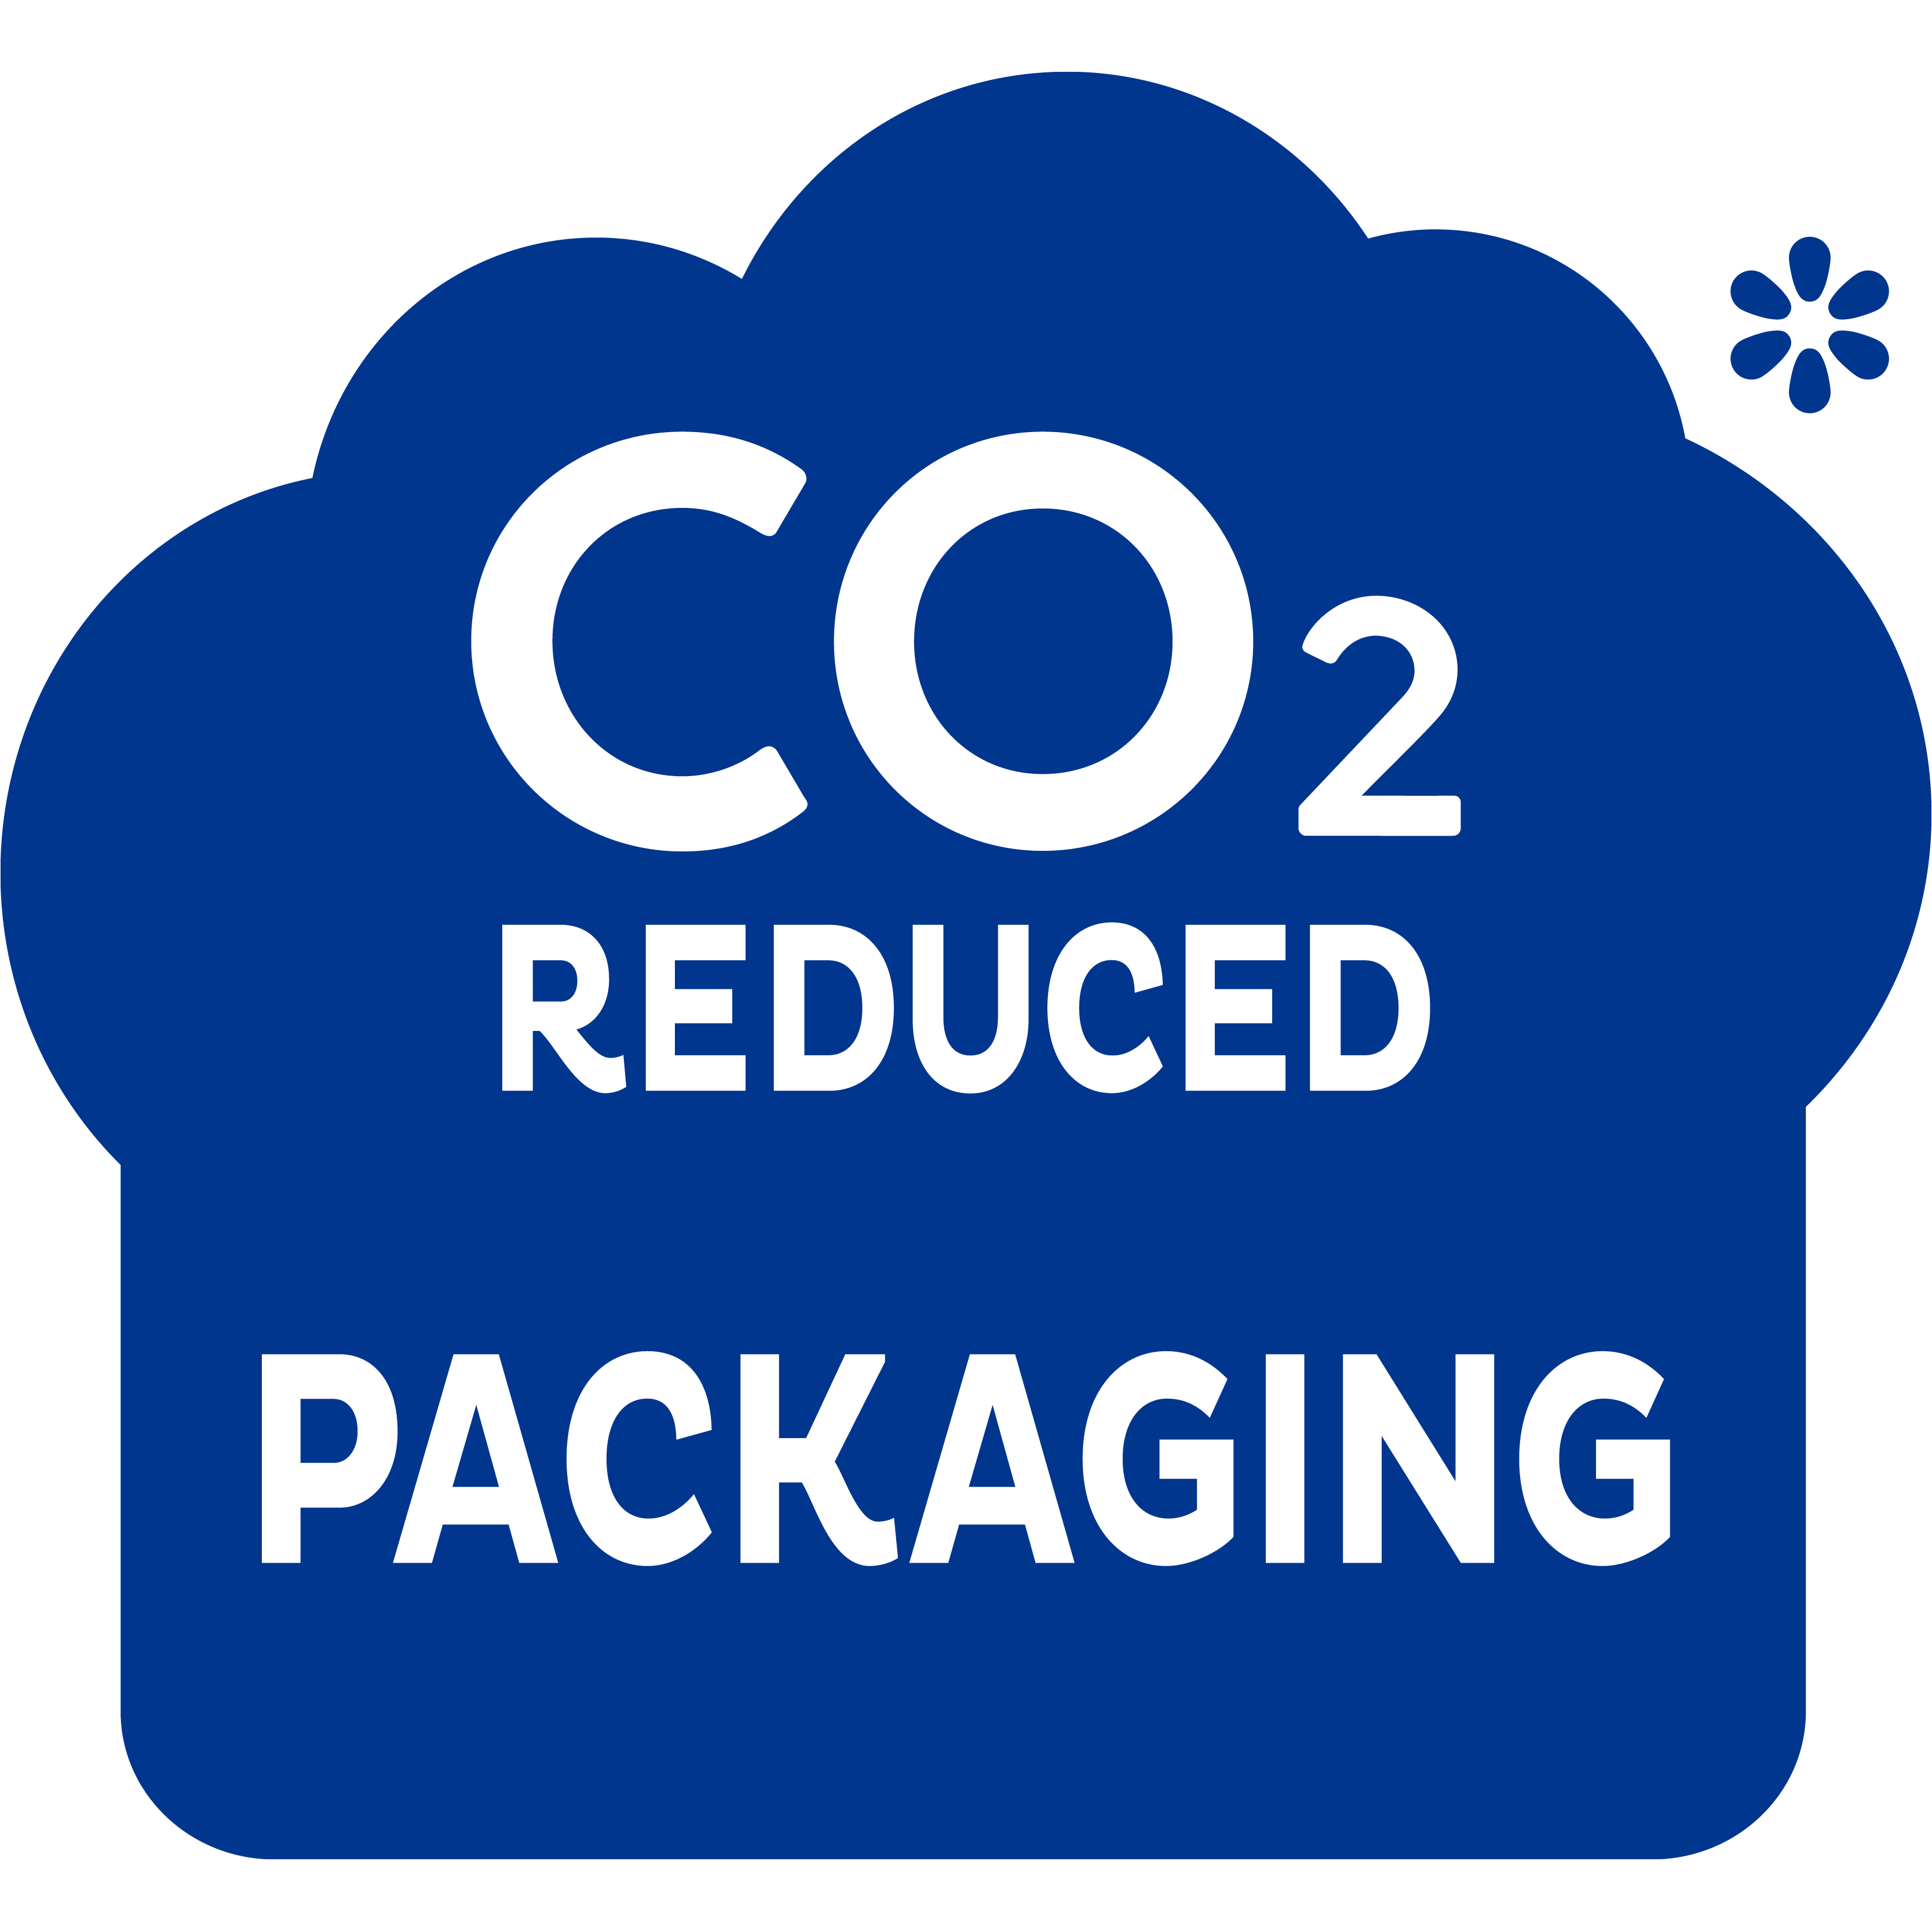 Pakkauksen CO2-päästöt ovat pienemmät – tämä on askel oikeaan suuntaan